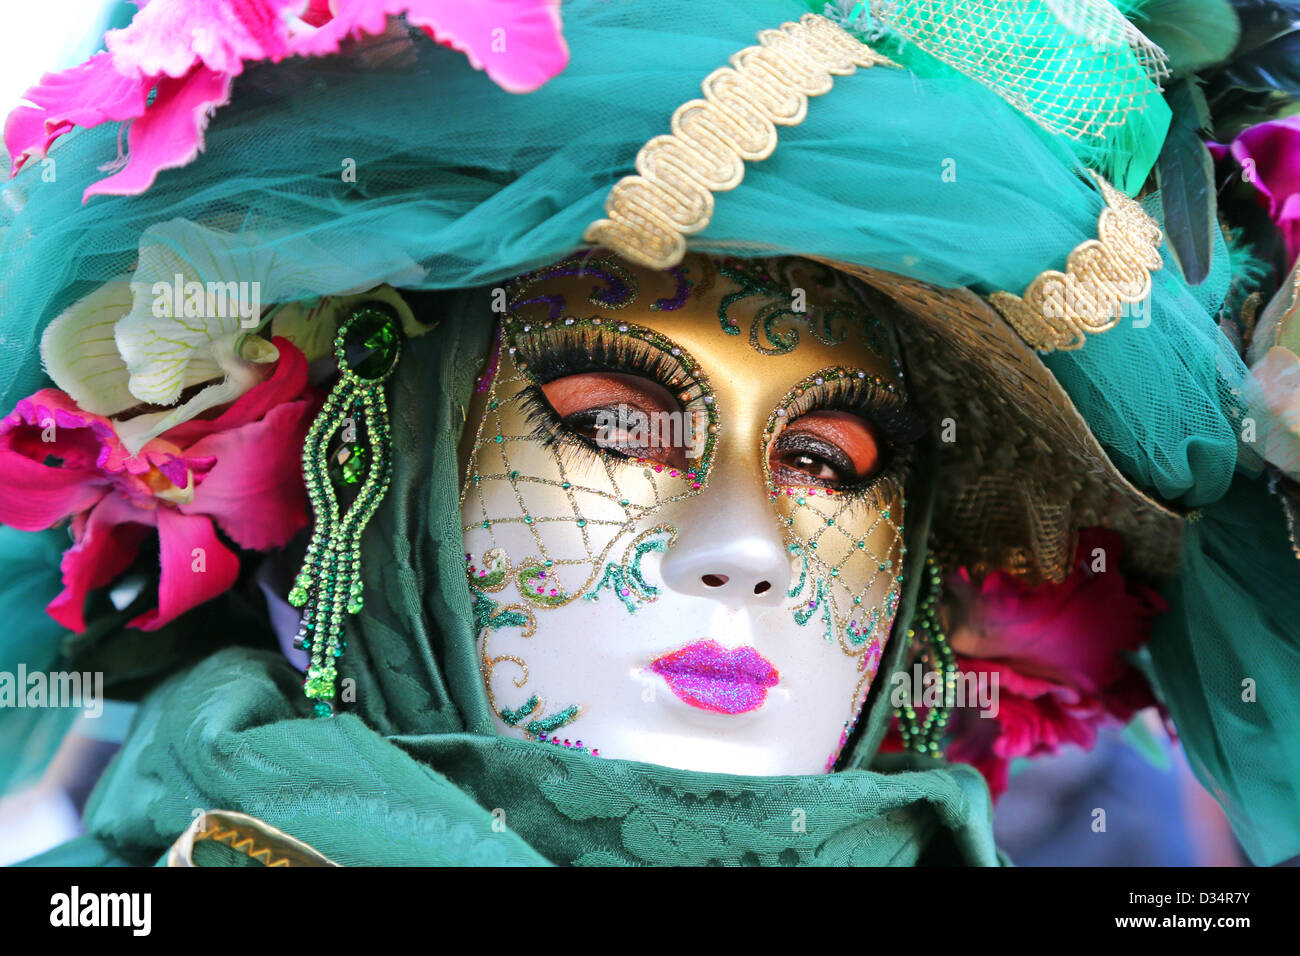 Venedig, Italien. 9. Februar 2013. Das Wochenende war beliebt auf der Venedig Karneval 2013 als Menschenmassen strömten, um die fantastischen Kostüme und Masken in Venedig zu sehen. Bildnachweis: Paul Brown / Alamy Live News Stockfoto